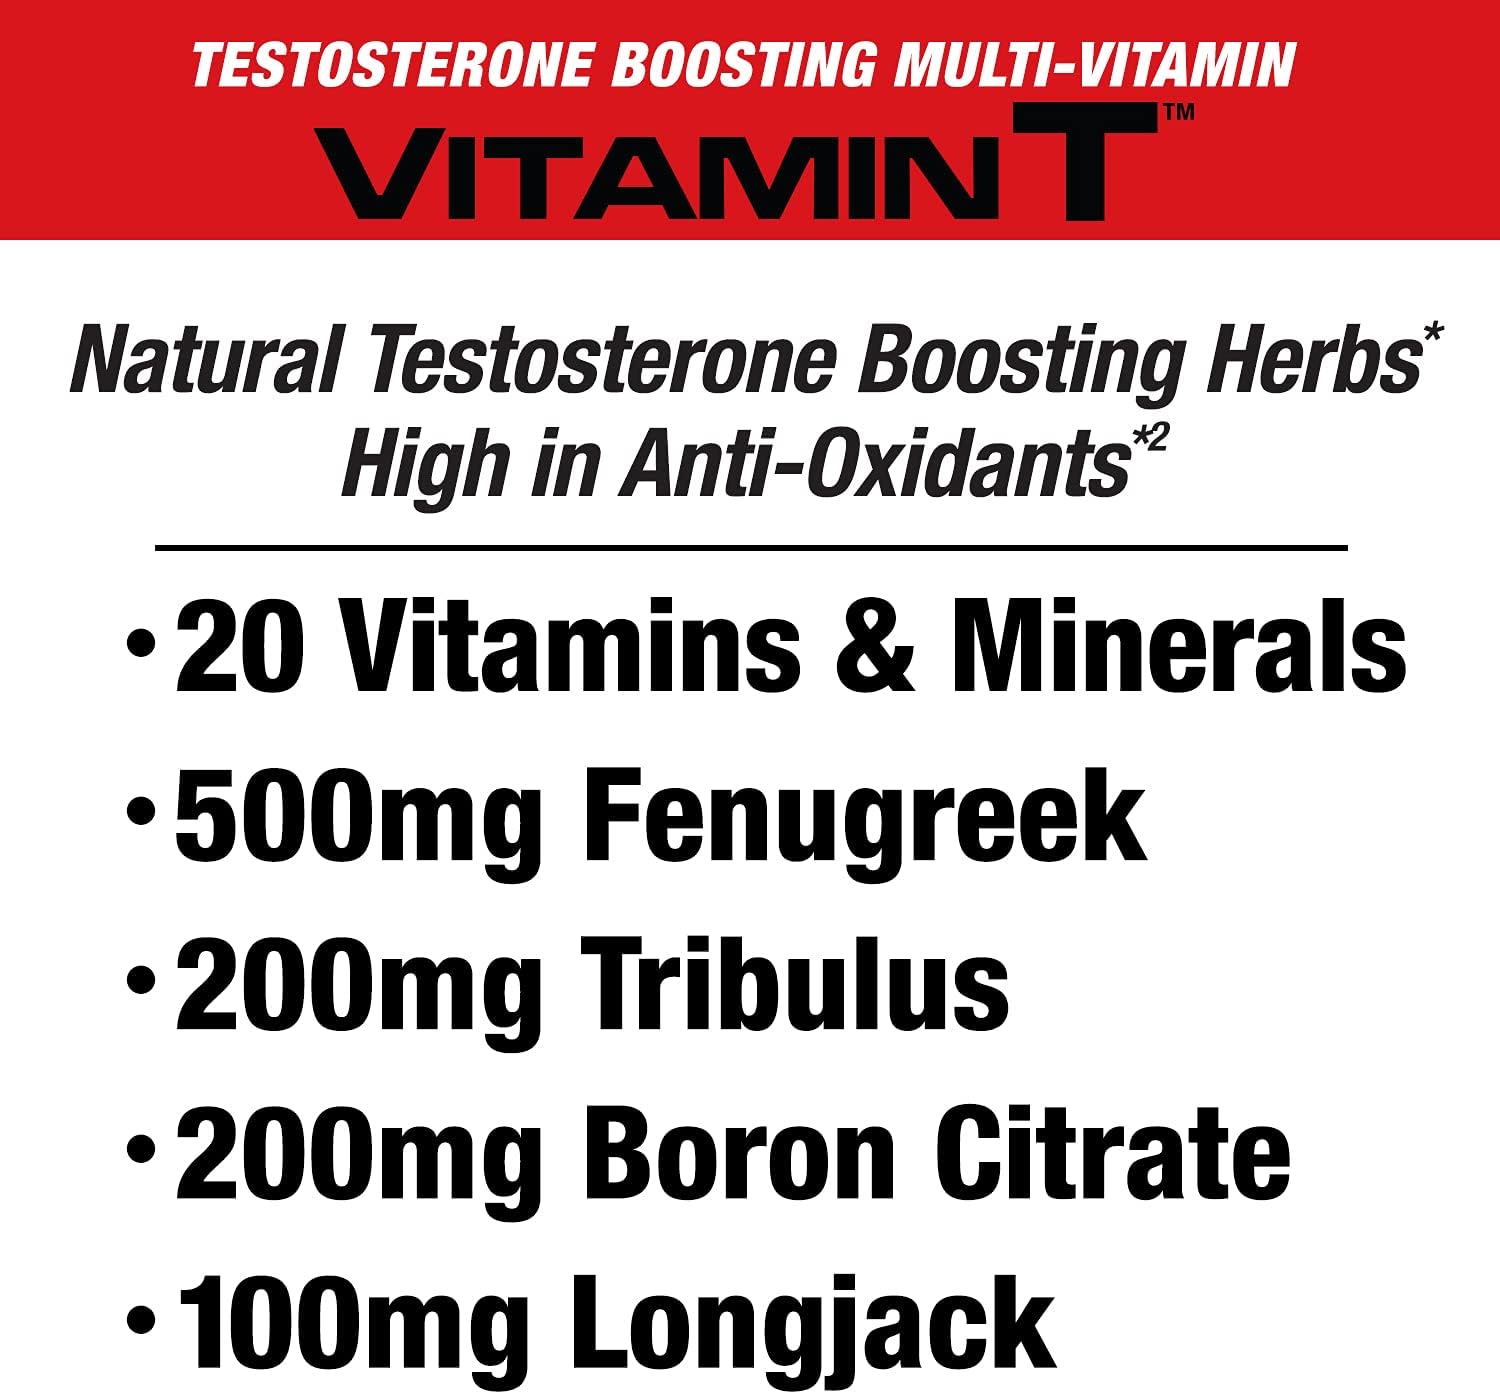  MuscleMeds Vitamin T Daily Complete Multivitamin for Men En